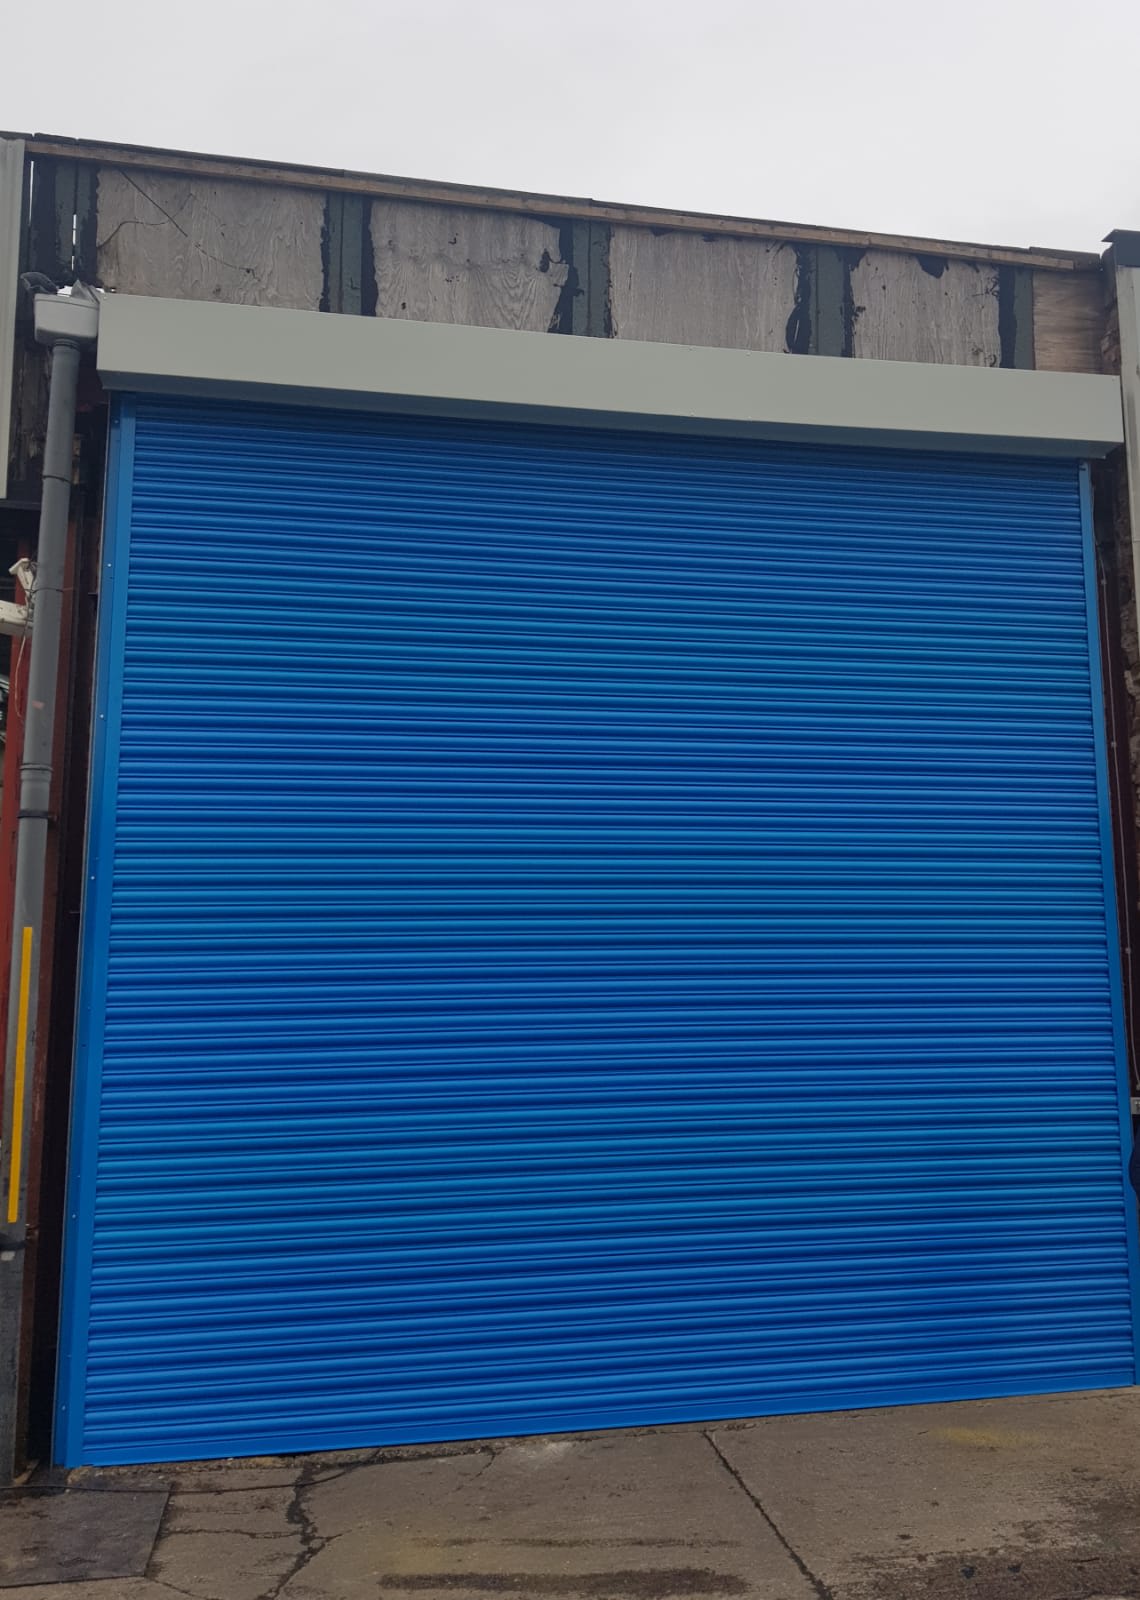 A1 Access shutters & Maintenance Ltd